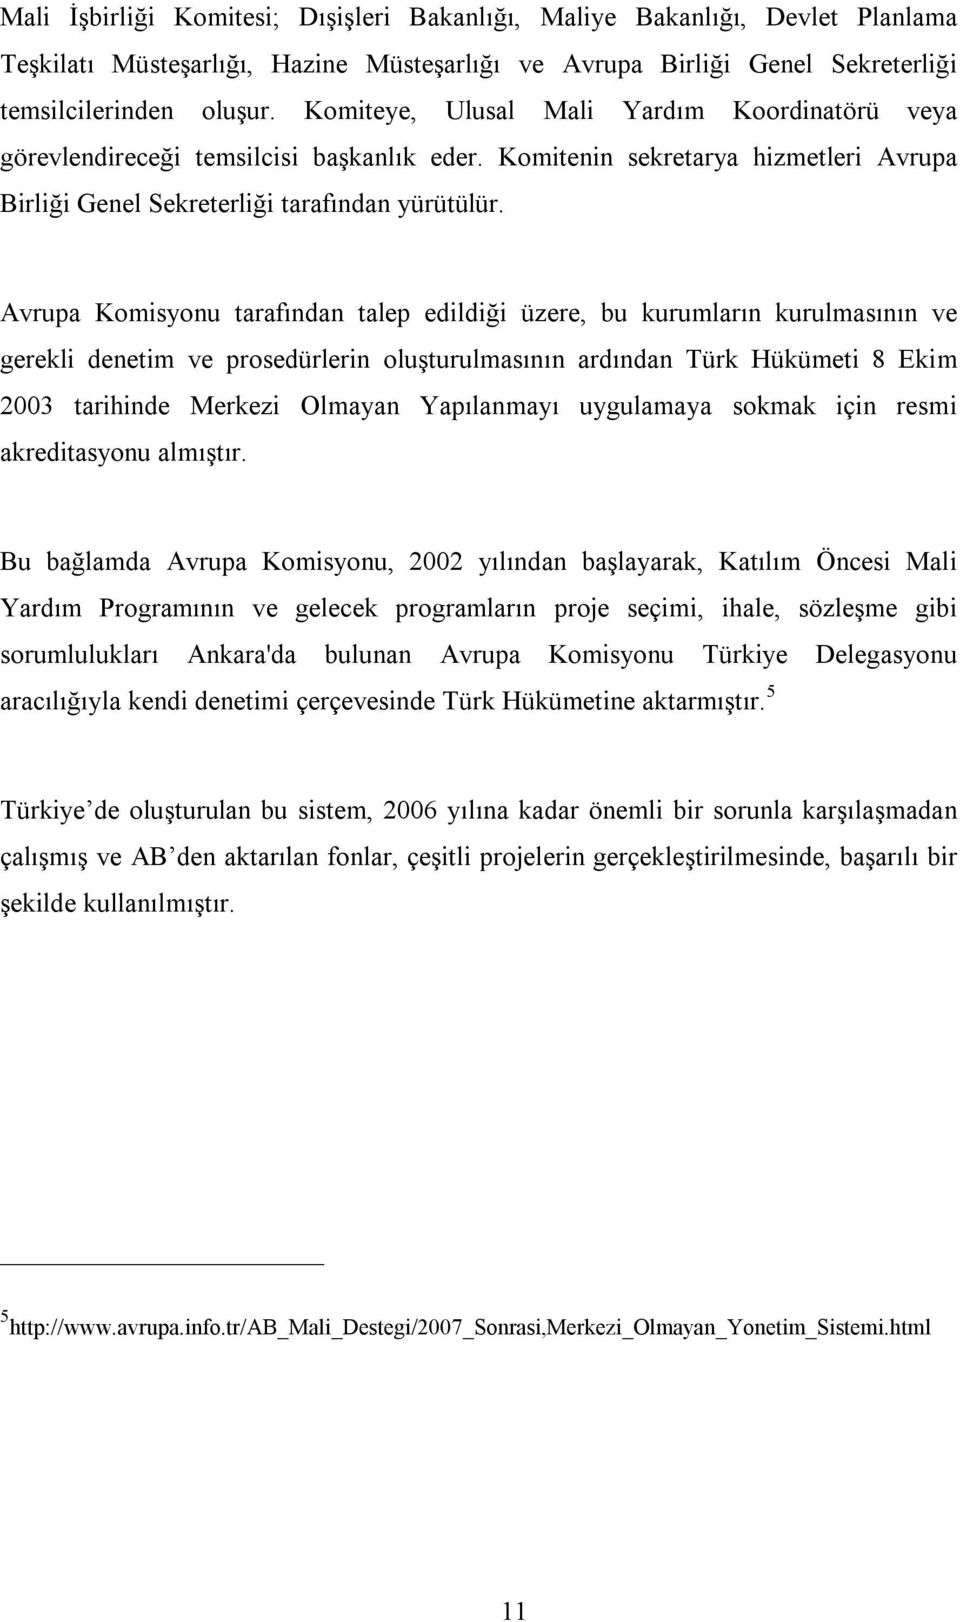 Avrupa Komisyonu tarafından talep edildiği üzere, bu kurumların kurulmasının ve gerekli denetim ve prosedürlerin oluşturulmasının ardından Türk Hükümeti 8 Ekim 2003 tarihinde Merkezi Olmayan